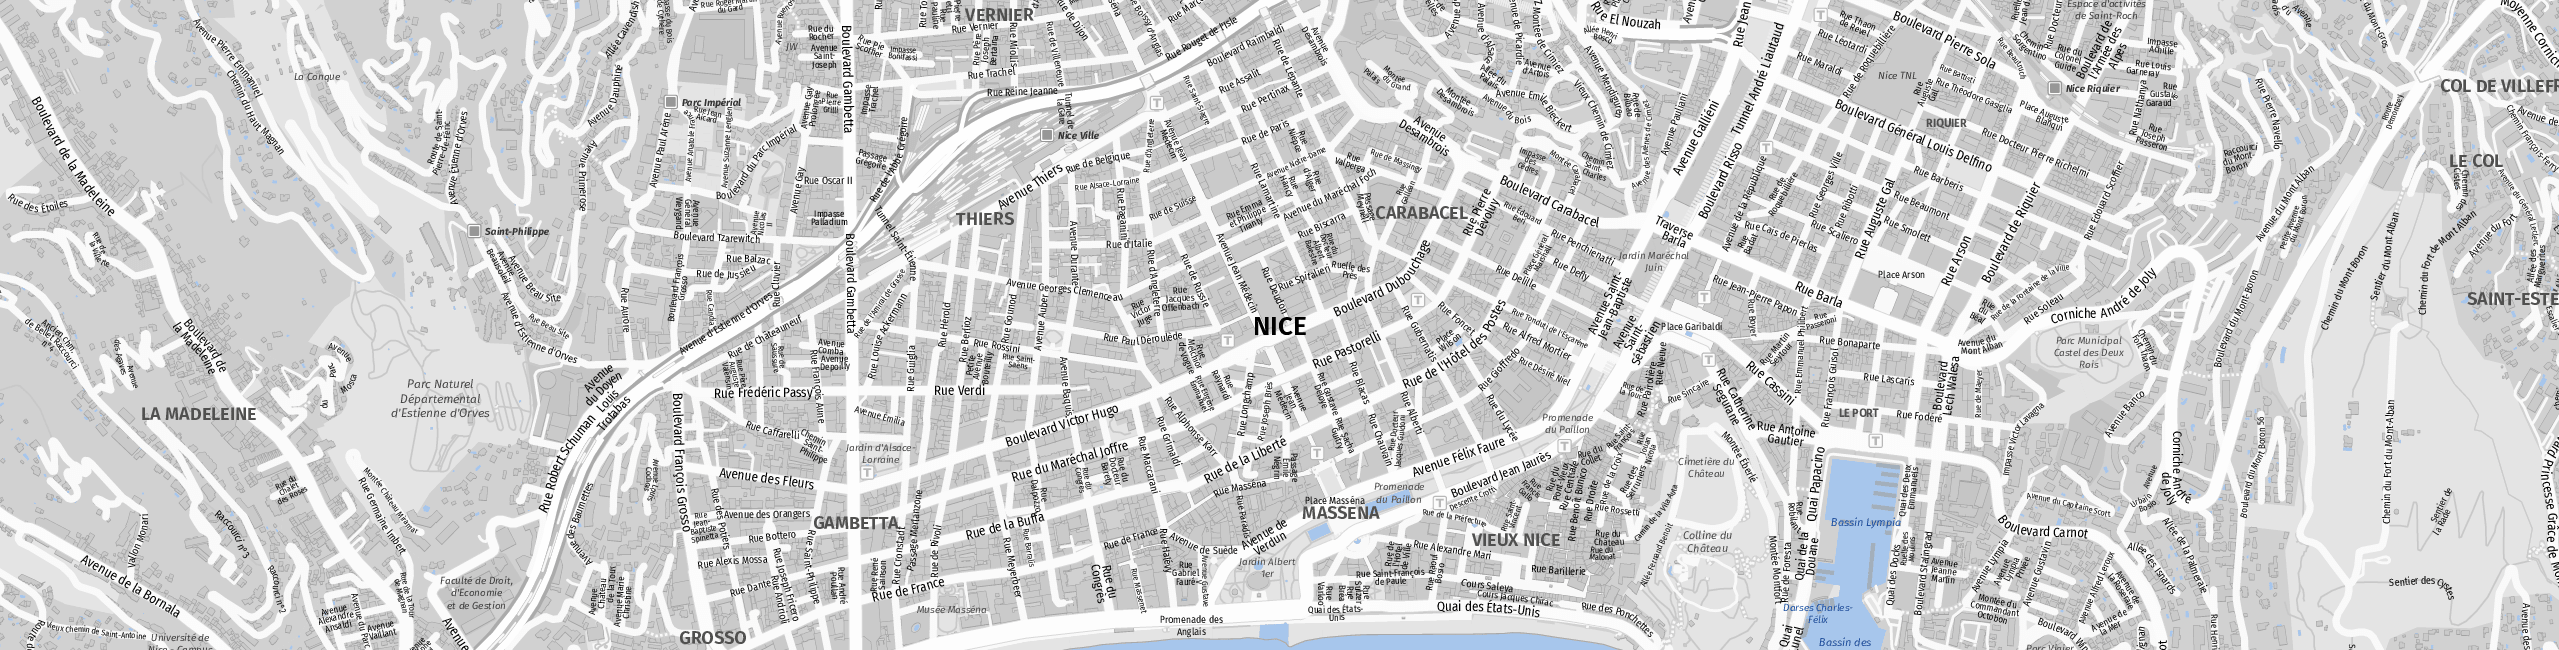 Stadtplan Nice zum Downloaden.